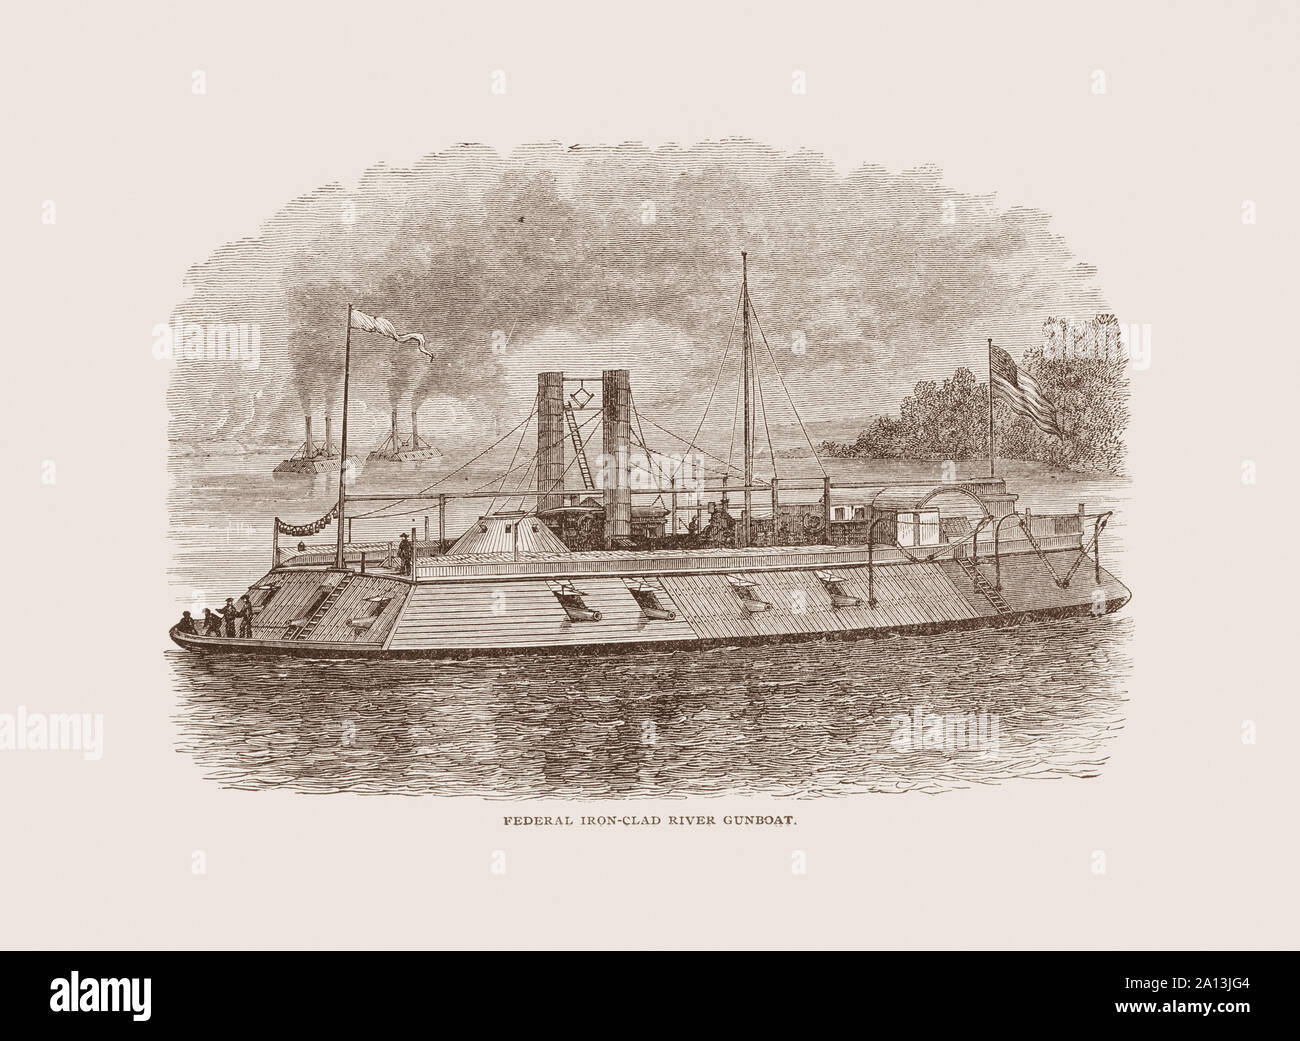 Amerikanischer Bürgerkrieg Geschichte eingraviert Drucken einer Union gepanzerte Fluss kanonenboot. Stockfoto